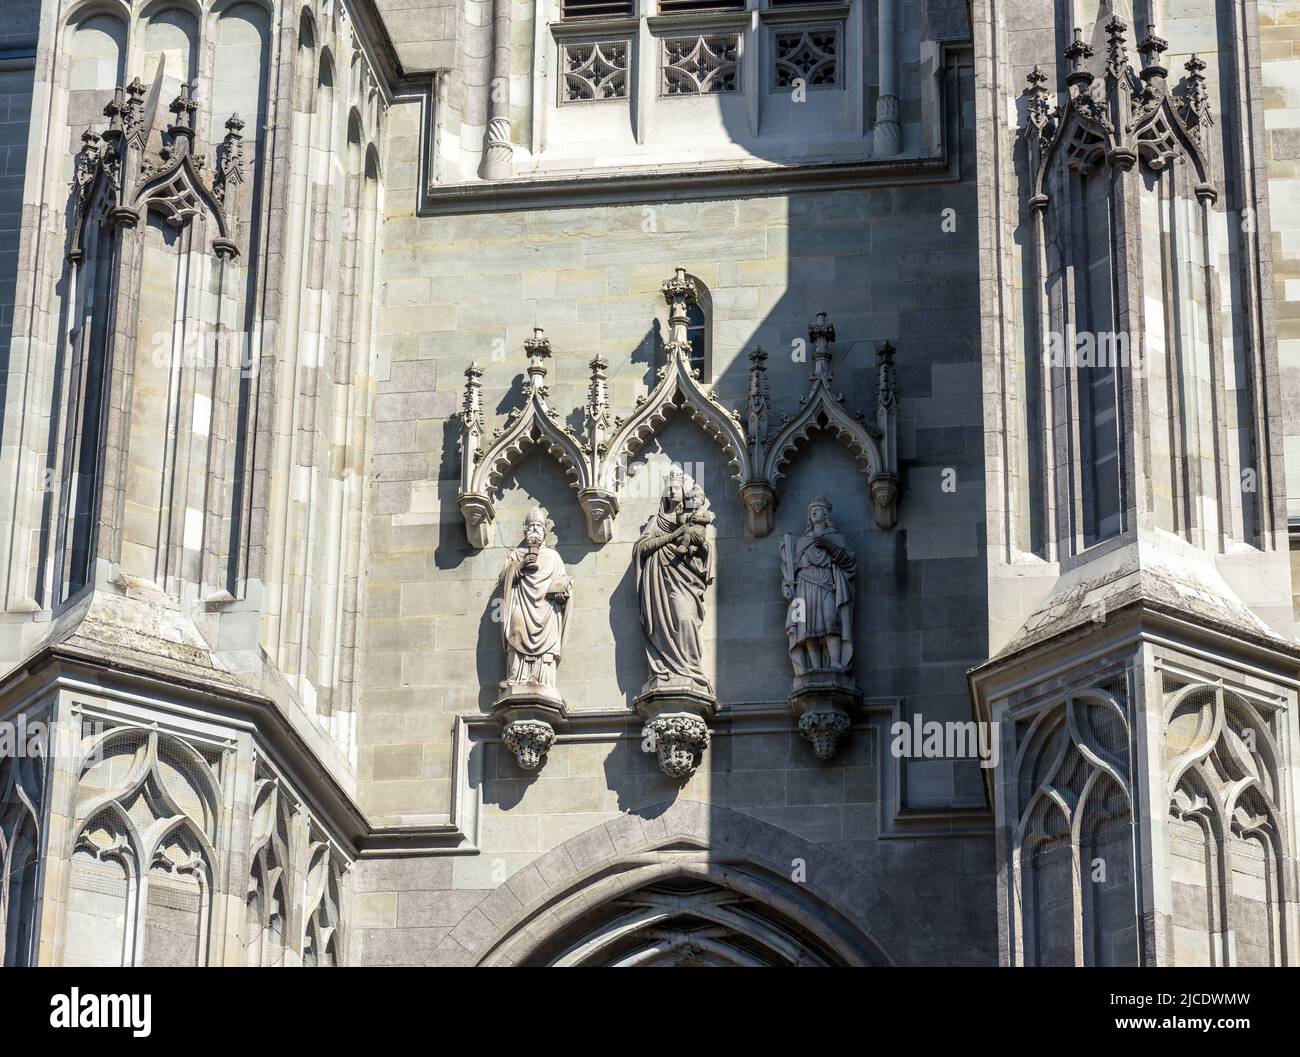 Cathédrale de Constance (Konstanz Minster), Allemagne. C'est un monument historique de la vieille ville de Constance. Relief de la façade de l'église gothique médiévale. Env Banque D'Images